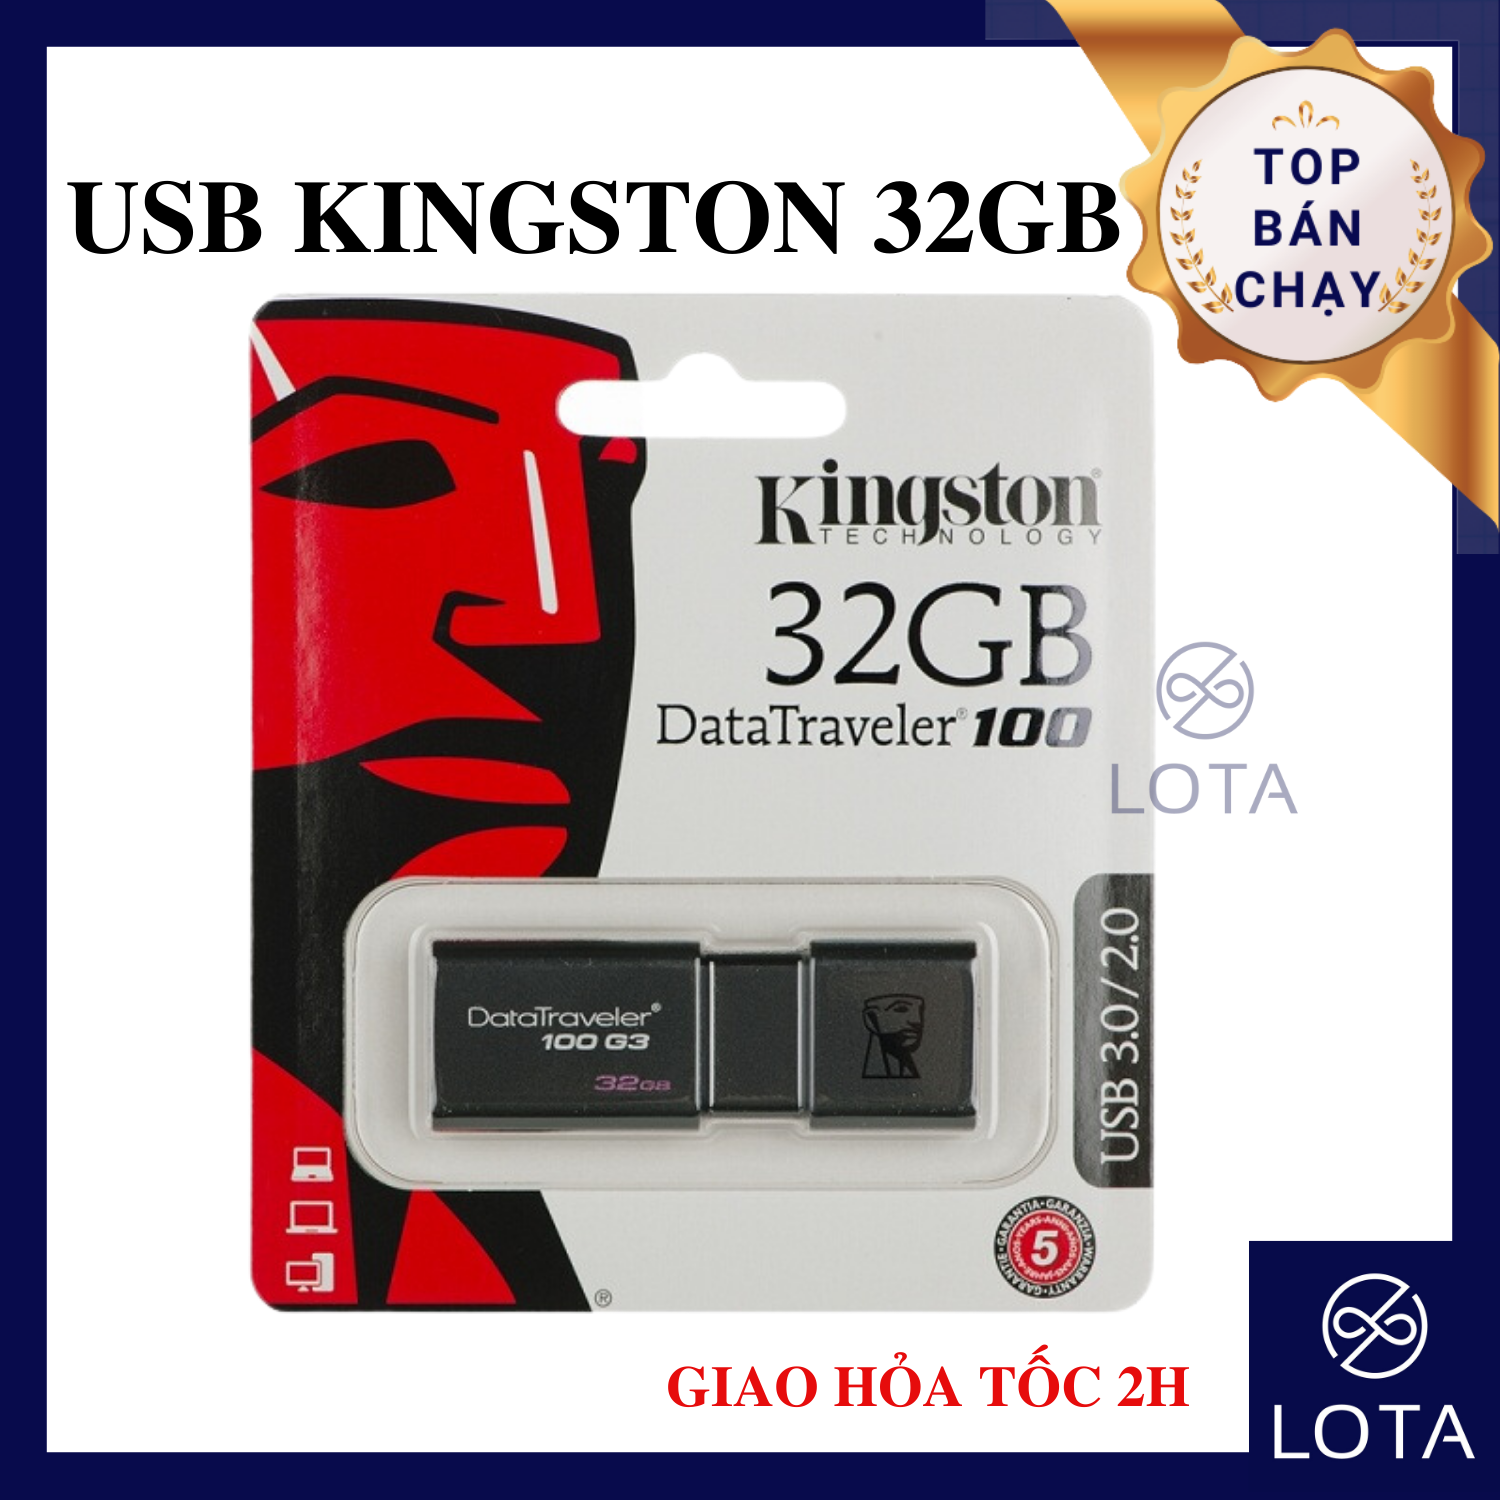 USB KINGSTON DT101 32GB USB cao cấp siêu xịn 32 GB gygabye giá rẻ USB dung lượng lớn thiết bị lưu trữ chất lượng hàng siêu bền thiết kế đẹp độc lạ USB đẳng cấp USB nhôm kim loại USB 32G tiện lợi LOTA SHOP